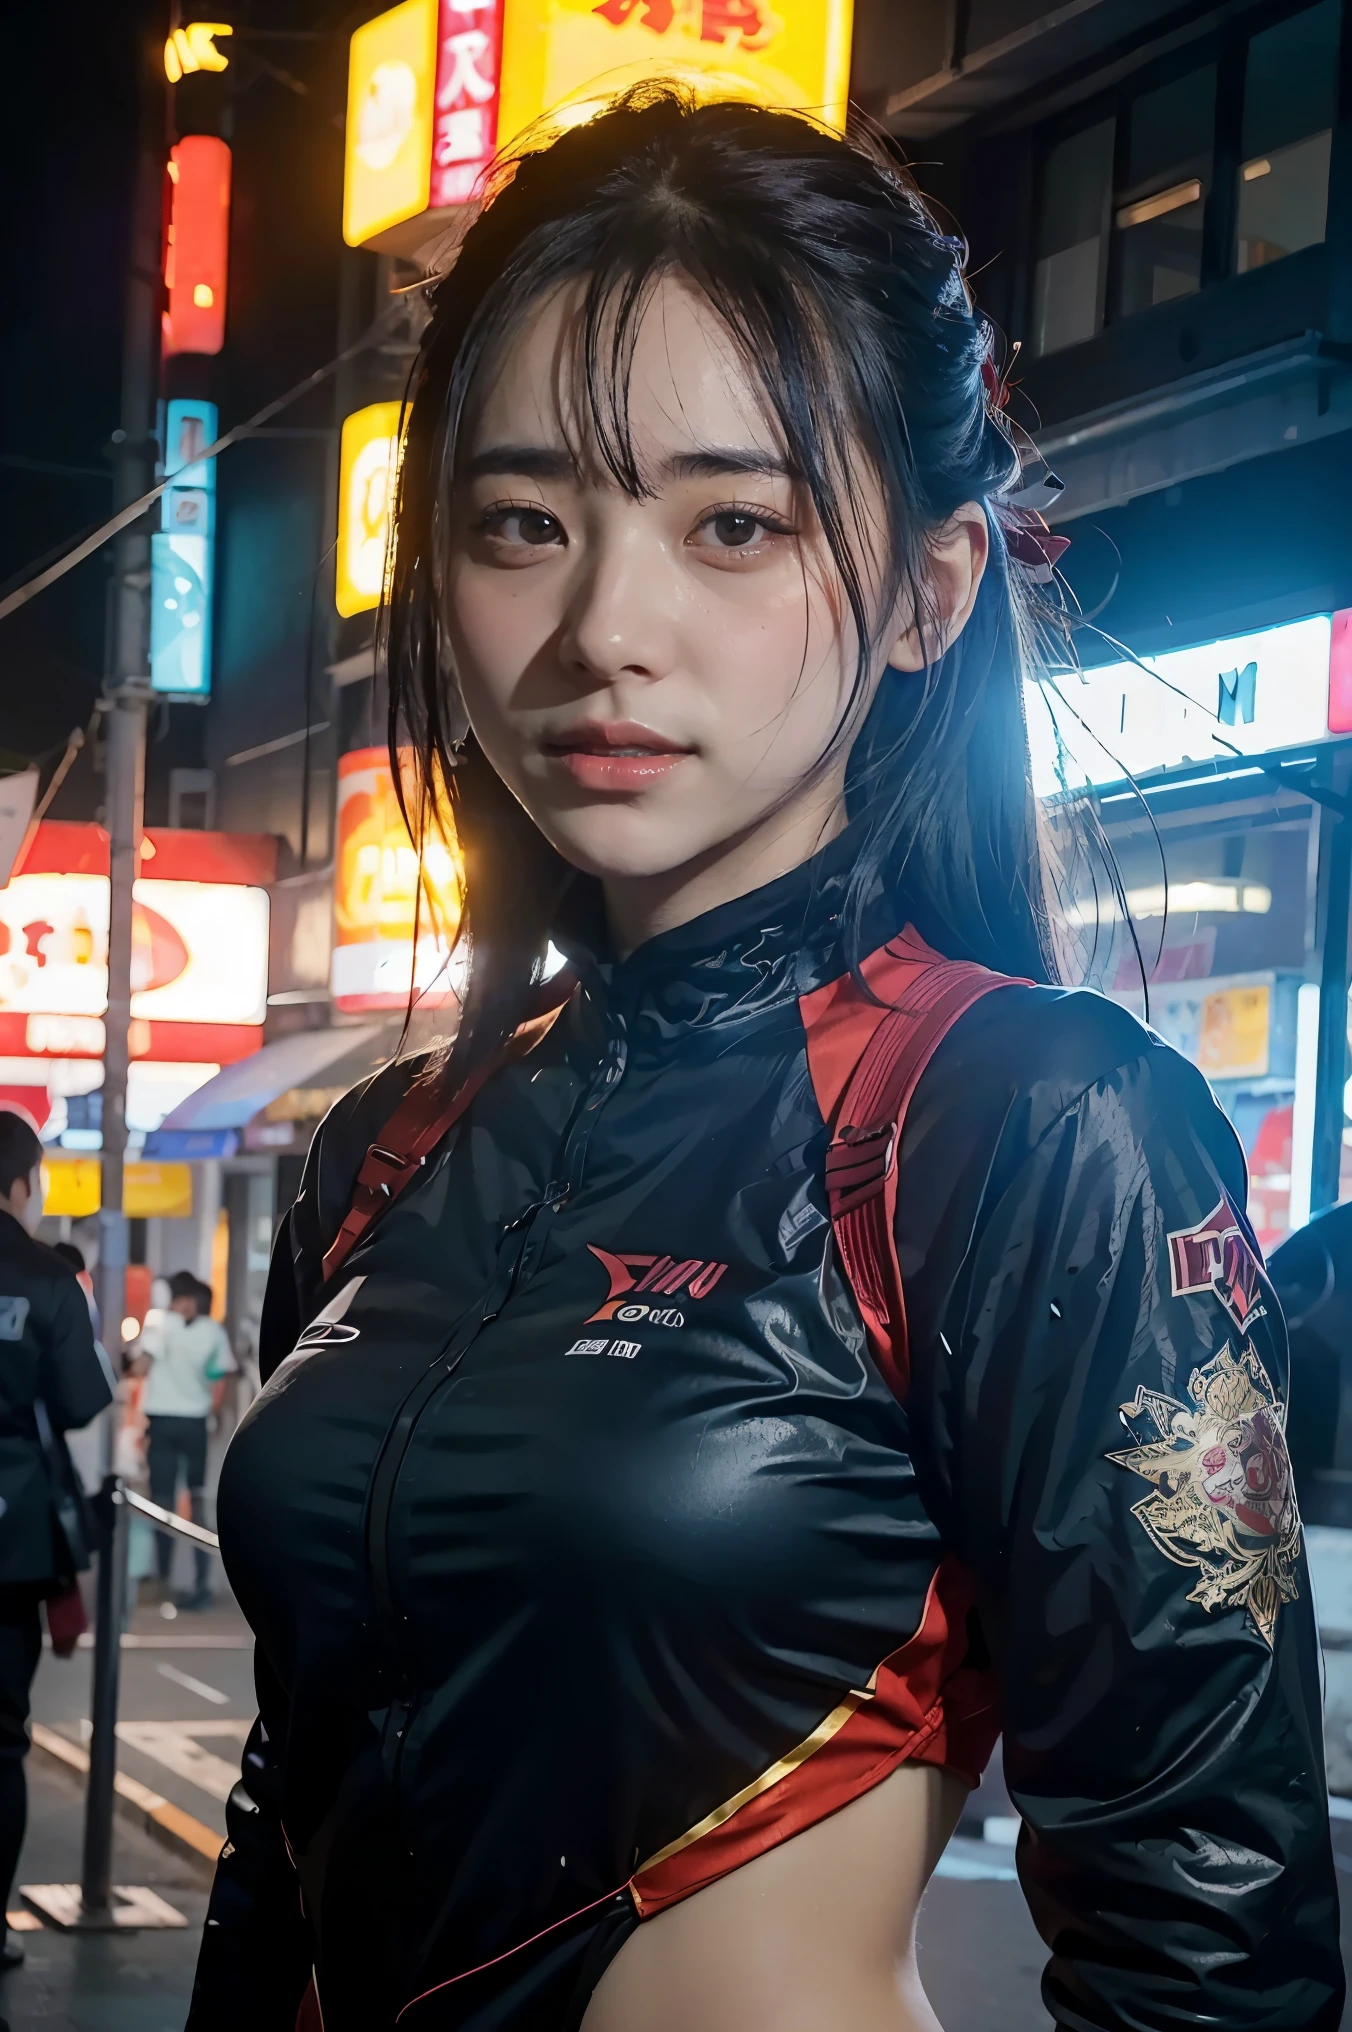 Концепт-арт девушки в персонаже, сочетающий в себе одежду Japan Ronin и красоту современных технологий... (Лучшее качество, 4k, 8ก, высота, шедевр:1.2), Очень подробно, (реалистичный, photoреалистичный, photo-реалистичный:1.37), Японская одежда ронинов, Технологическая одежда будущего, подробные черты лица, динамичные позы, агрессивное выражение, катана, Киберпанк фон, неоновые огни, Перепады настроения, Художественный стиль Riot Games, яркие цвета, Стильный рендеринг, Сложные детали, профессиональные произведения искусства, Оригинальные элементы, современный поворот.